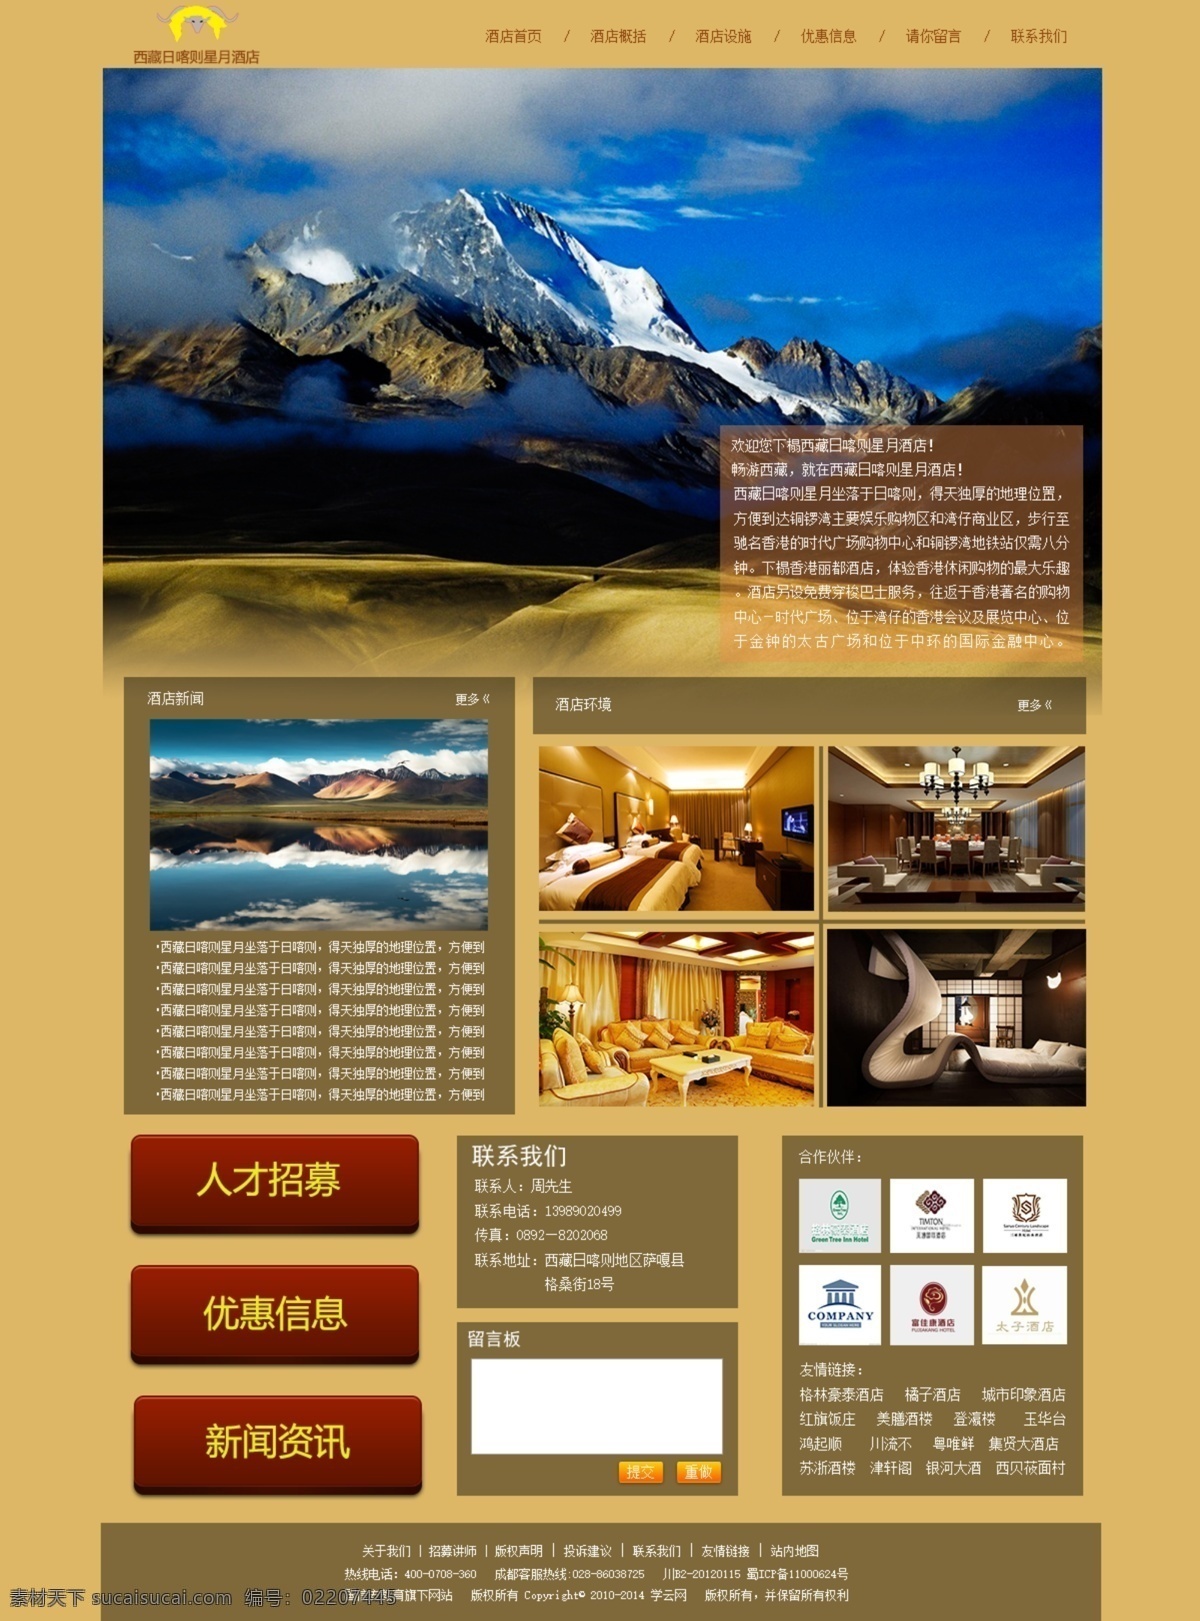 酒店 网站首页 源文件 酒店网站首页 西藏酒店网页 西藏 风光 主题 西藏风光主题 原创设计 原创网页设计